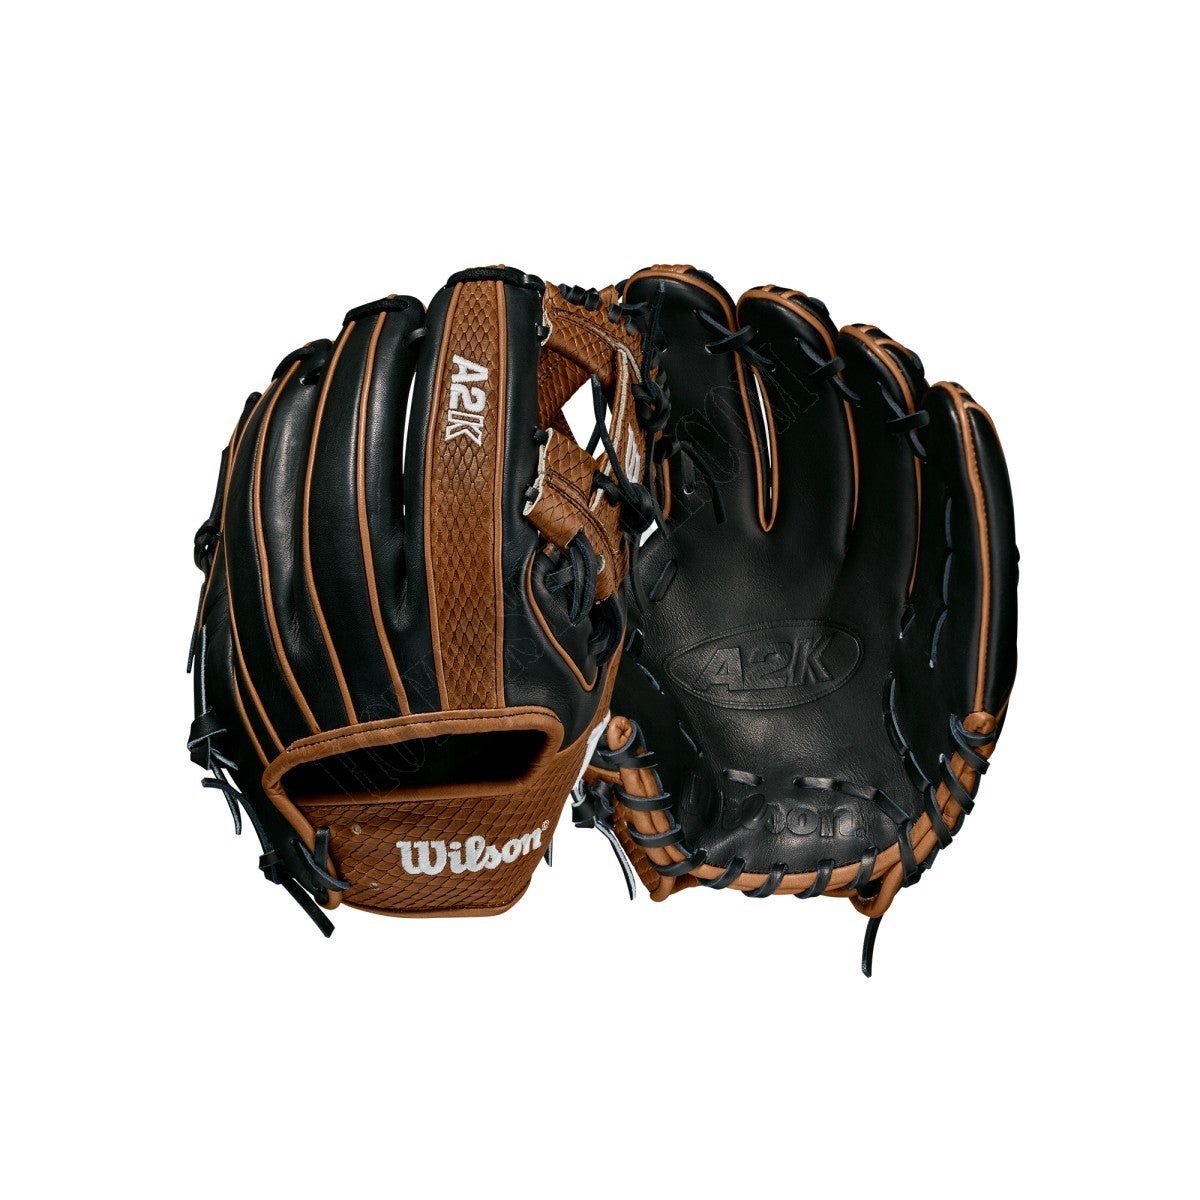 2021 A2K 1786 11.5" Infield Baseball Glove ● Wilson Promotions - 2021 A2K 1786 11.5" Infield Baseball Glove ● Wilson Promotions